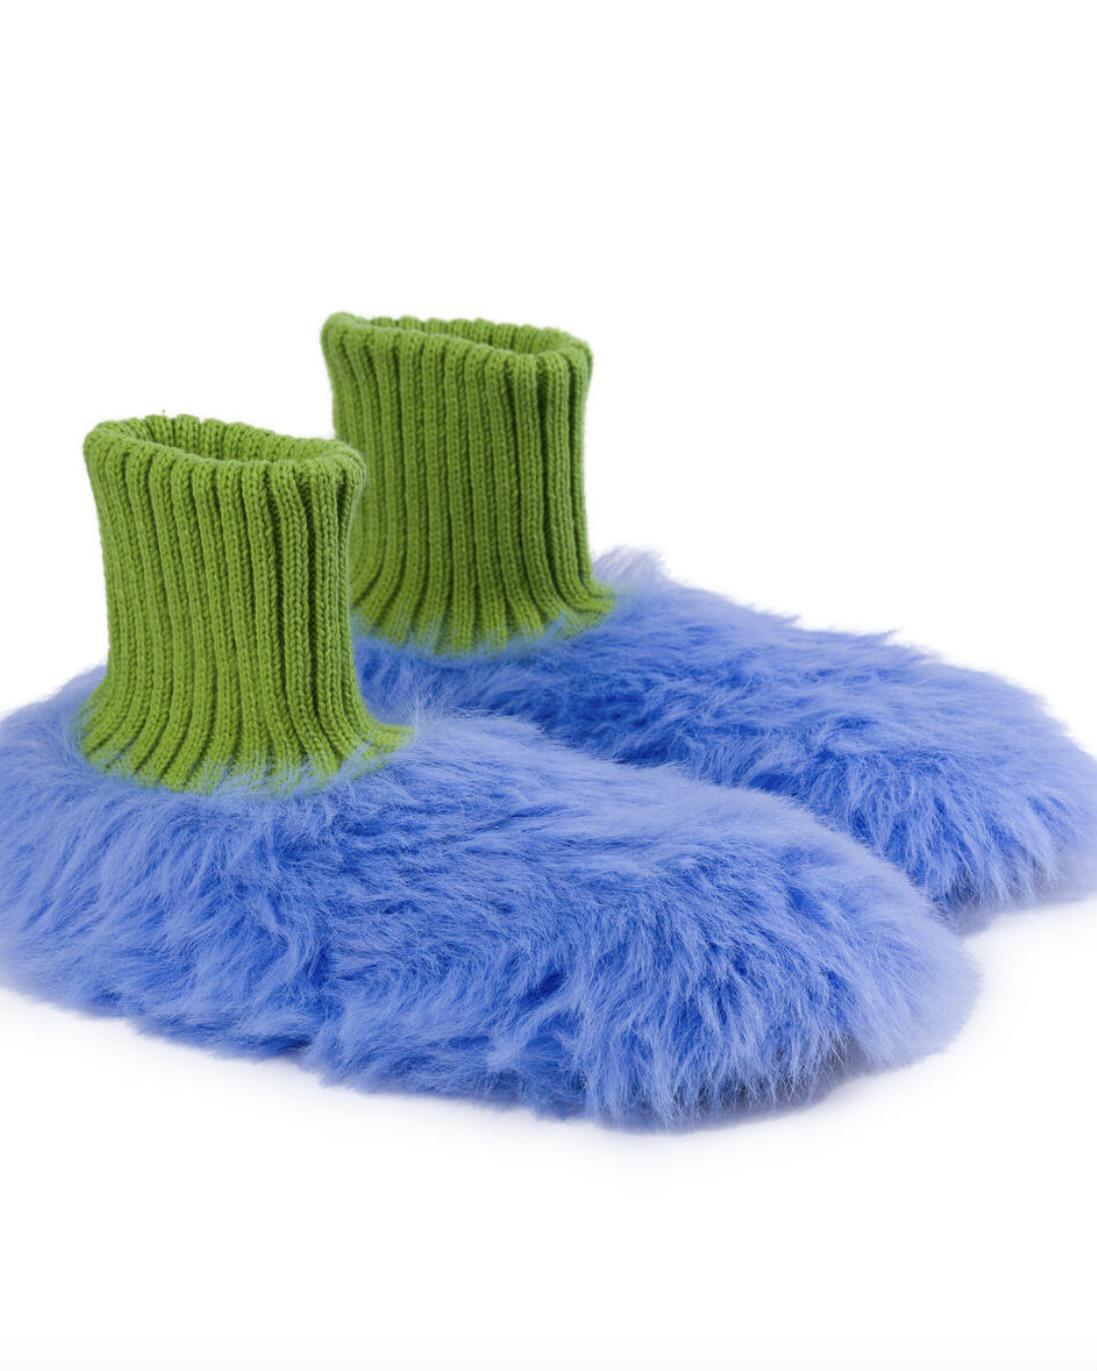 Verloop Fur Knit Sock Slipper in Periwinkle